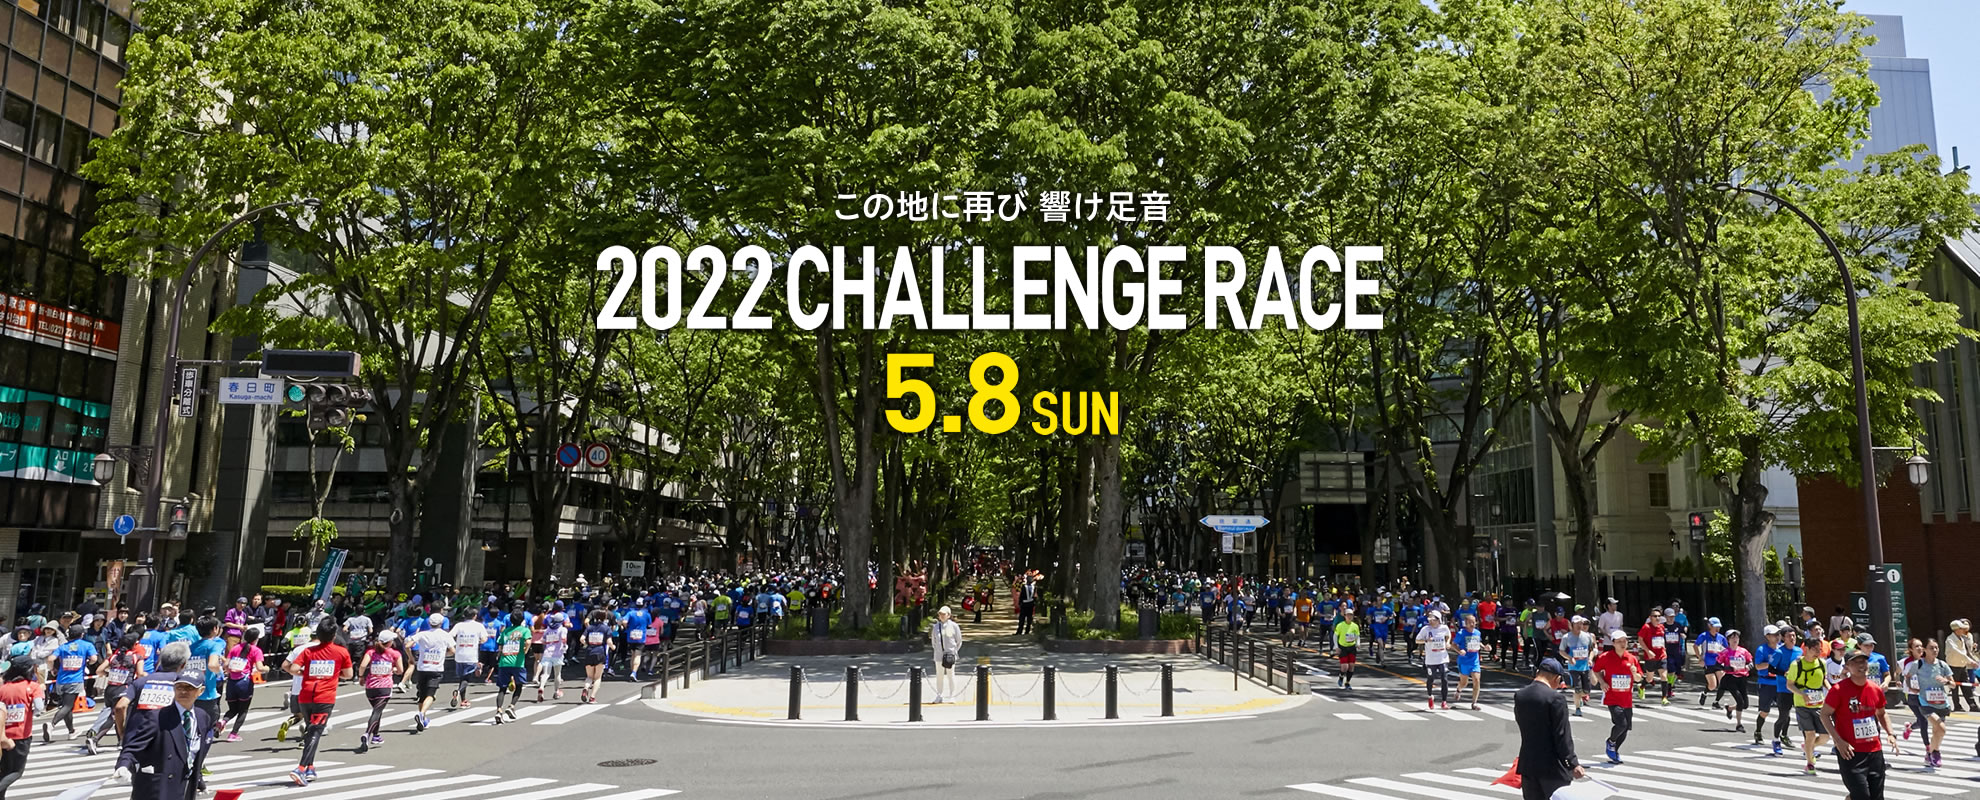 仙台国際ハーフマラソン 2022チャレンジレース | まちくる仙台